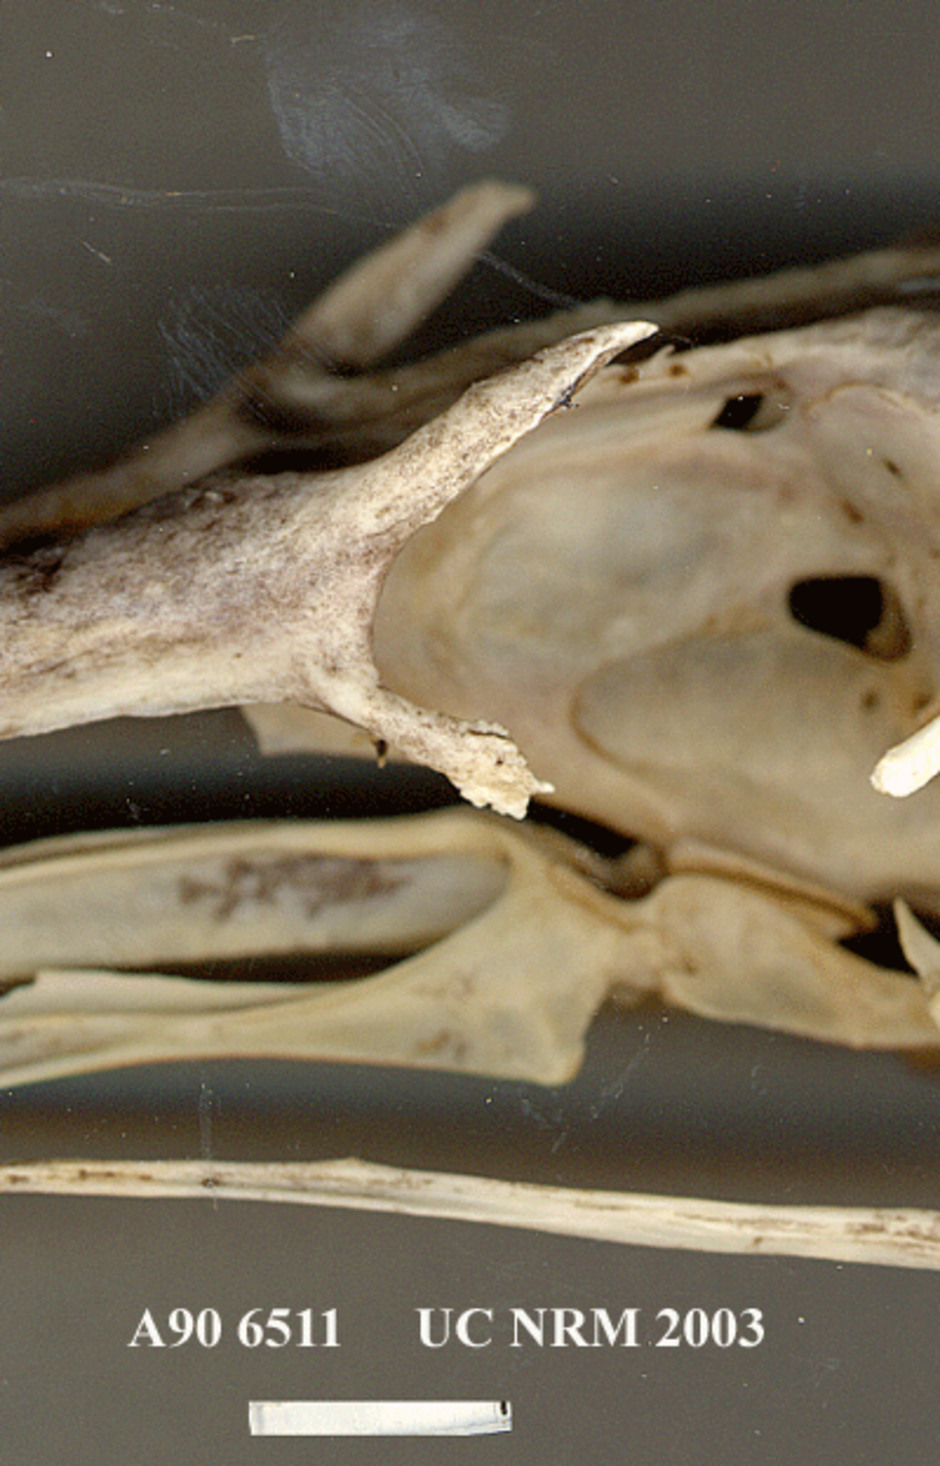 Detalj av kraniet kring ögonregionen, från sidan.